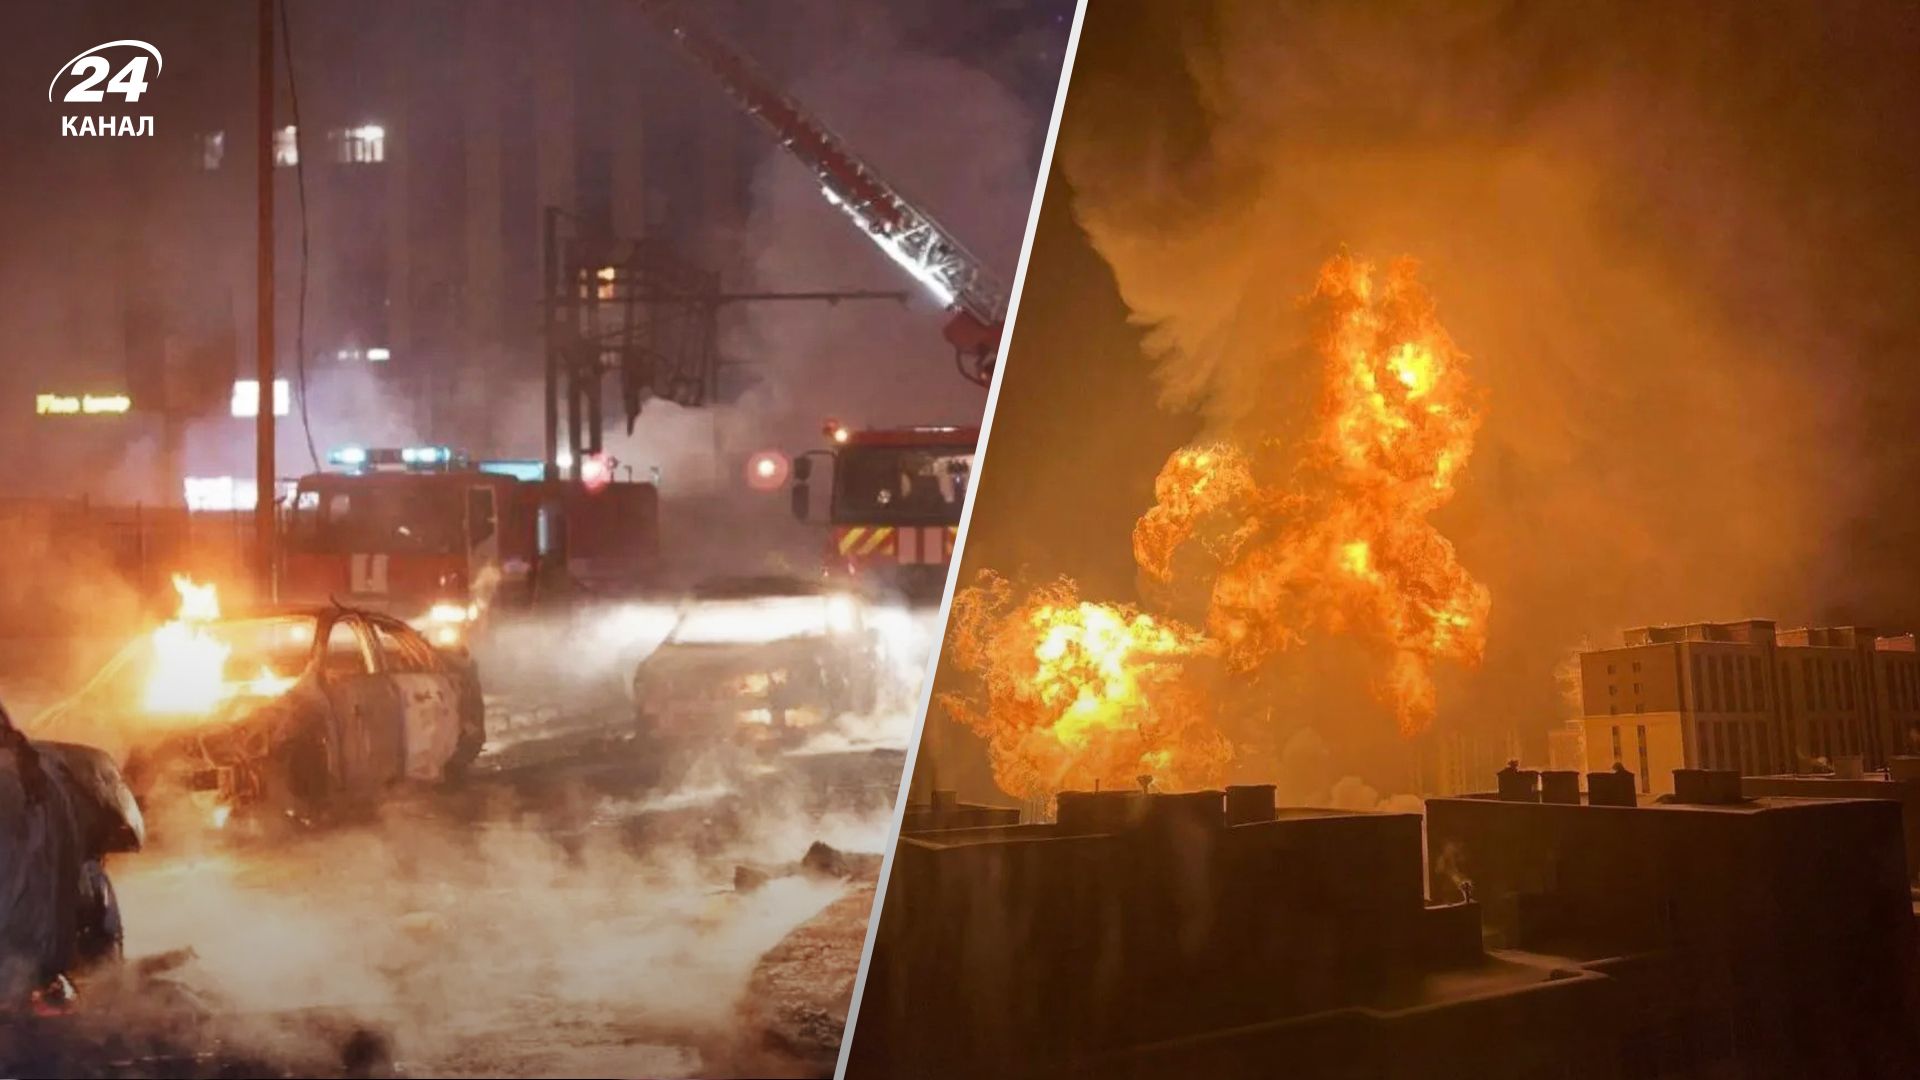 60-тонный газовоз взорвался в столице Монголии: есть погибшие и десять раненых - кадры пожара - 24 Канал